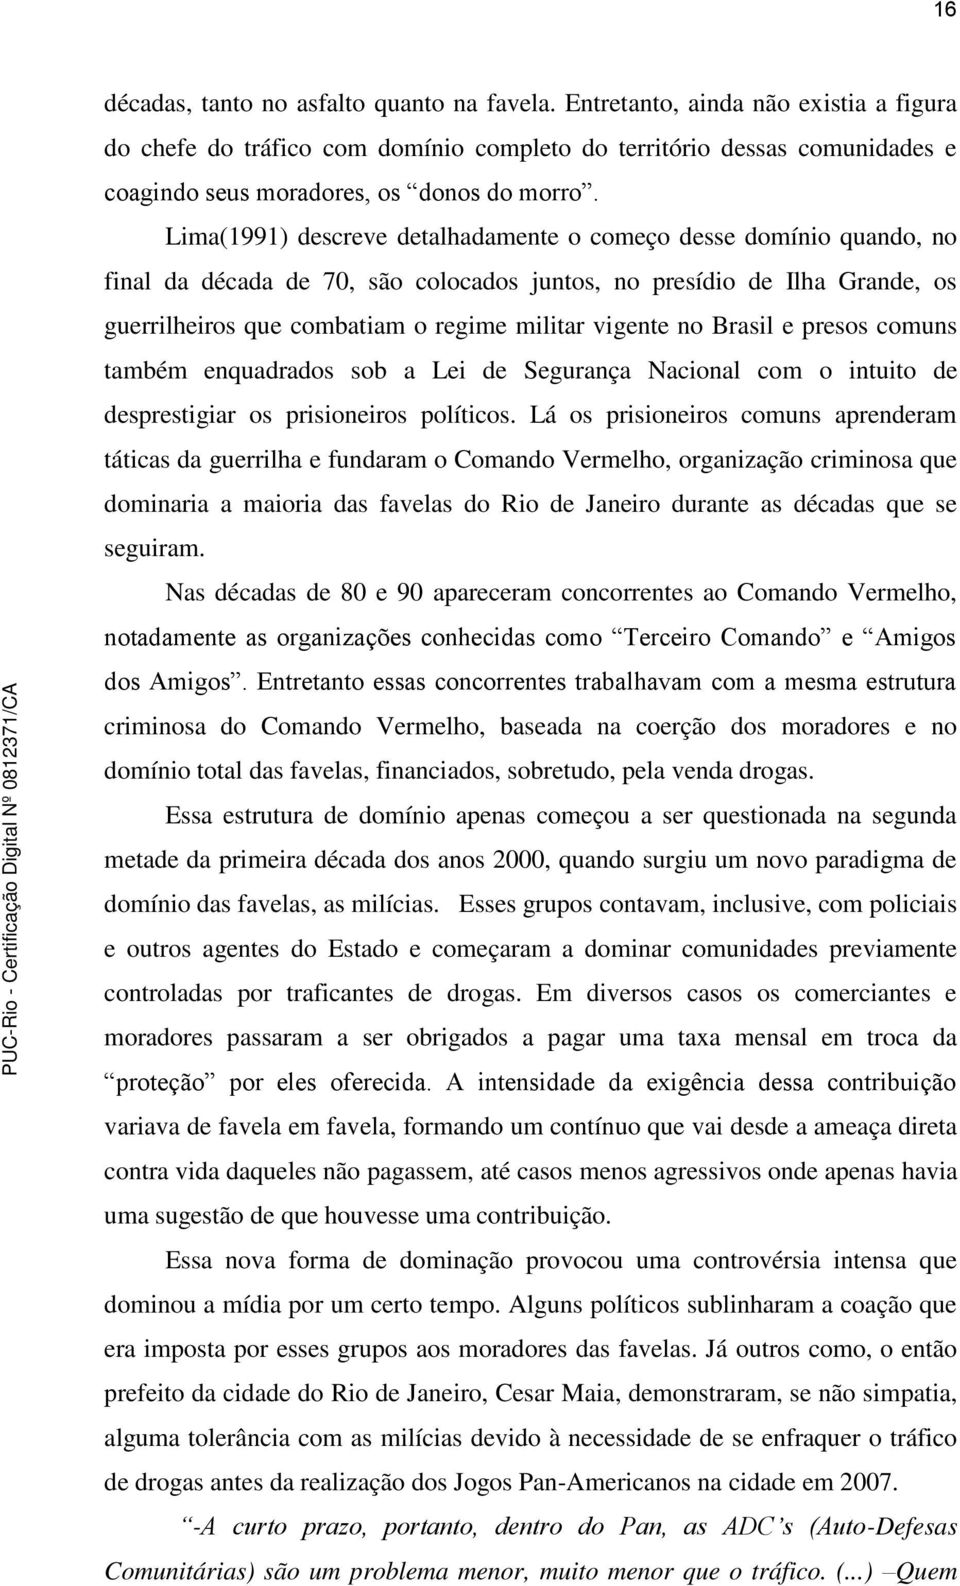 Lima(1991) descreve detalhadamente o começo desse domínio quando, no final da década de 70, são colocados juntos, no presídio de Ilha Grande, os guerrilheiros que combatiam o regime militar vigente